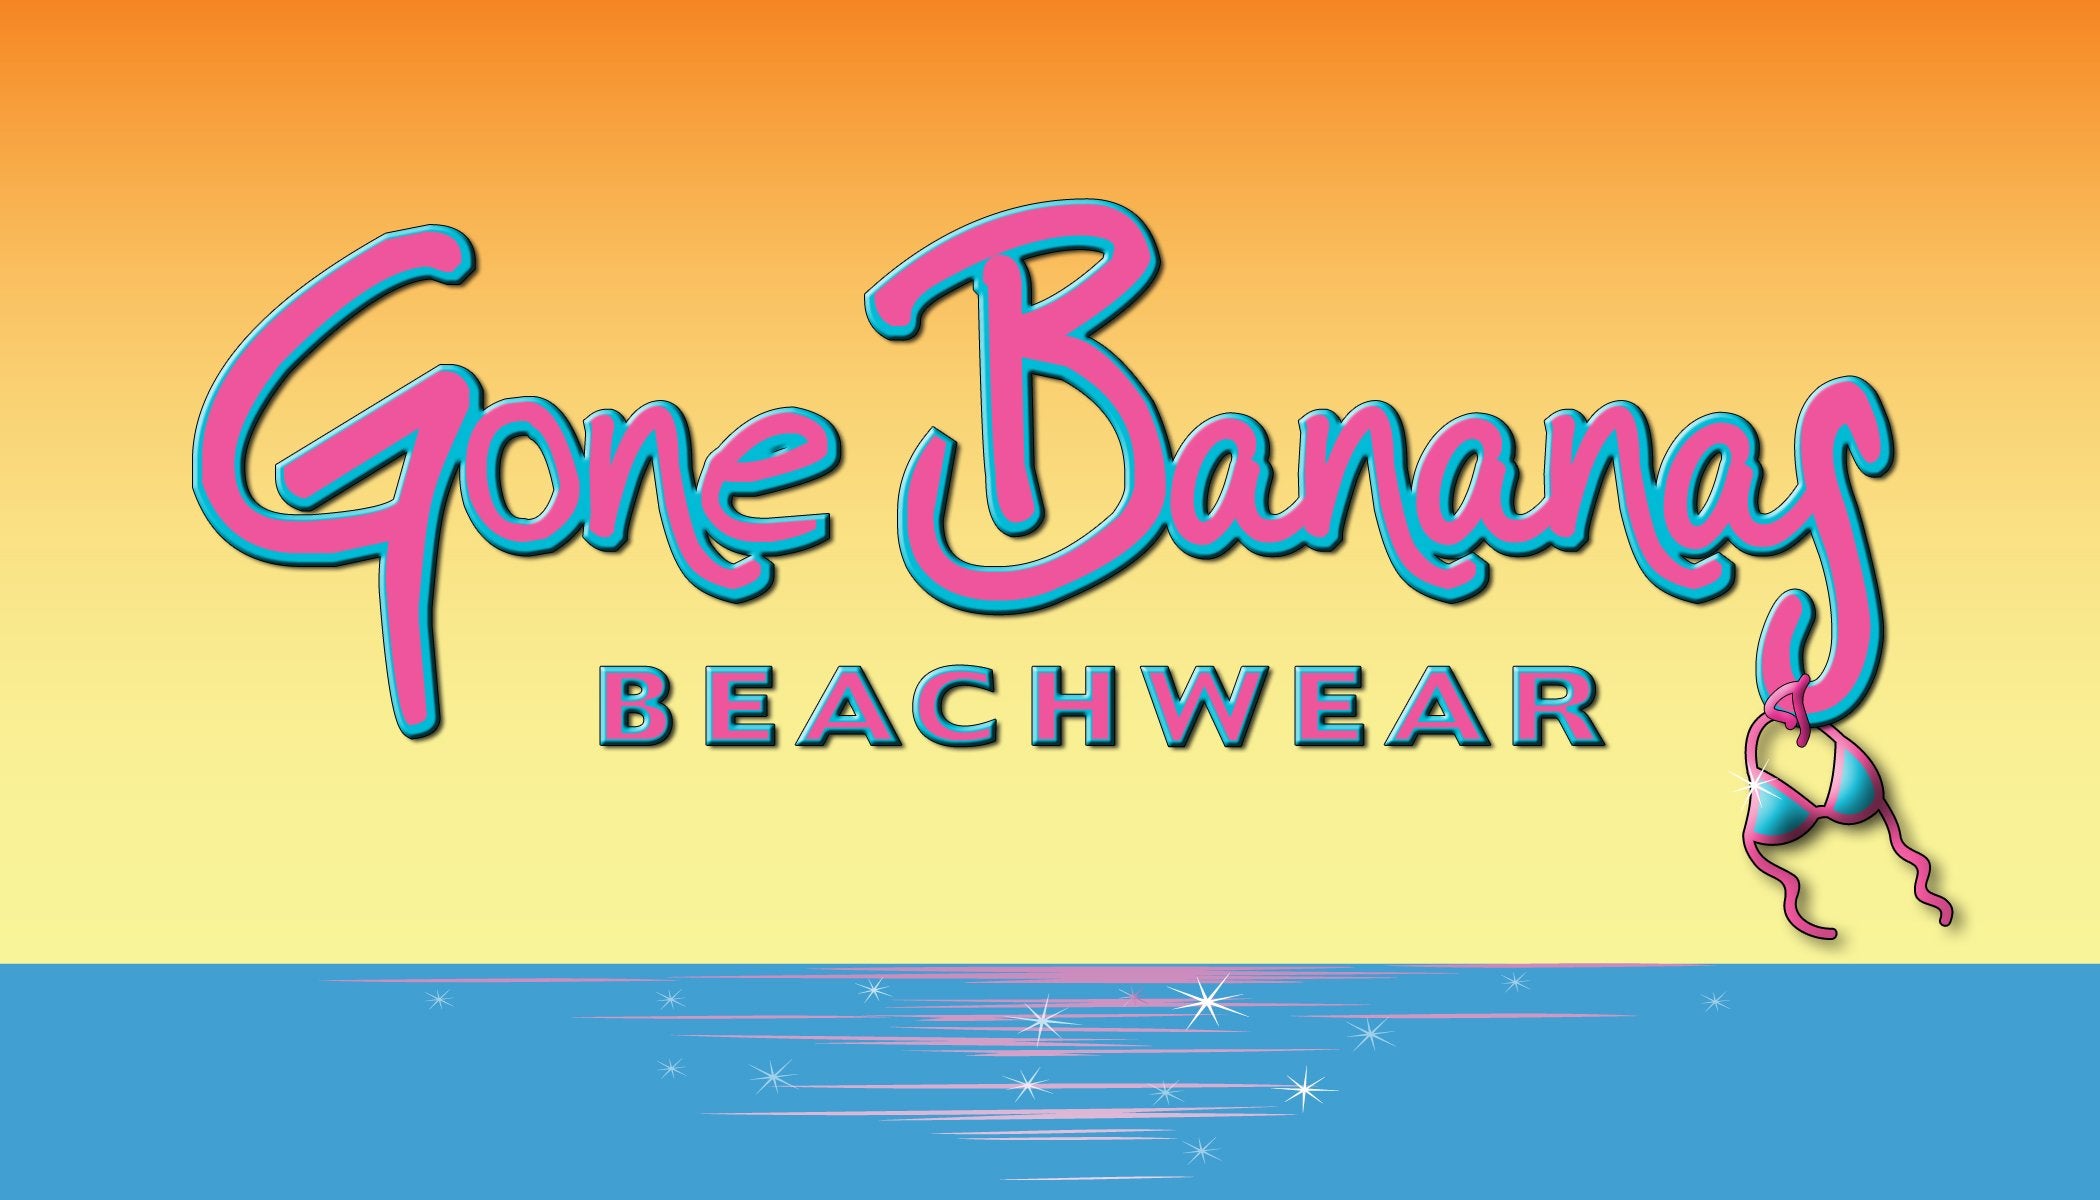 PQ Swim Chart  Gone Bananas Beachwear